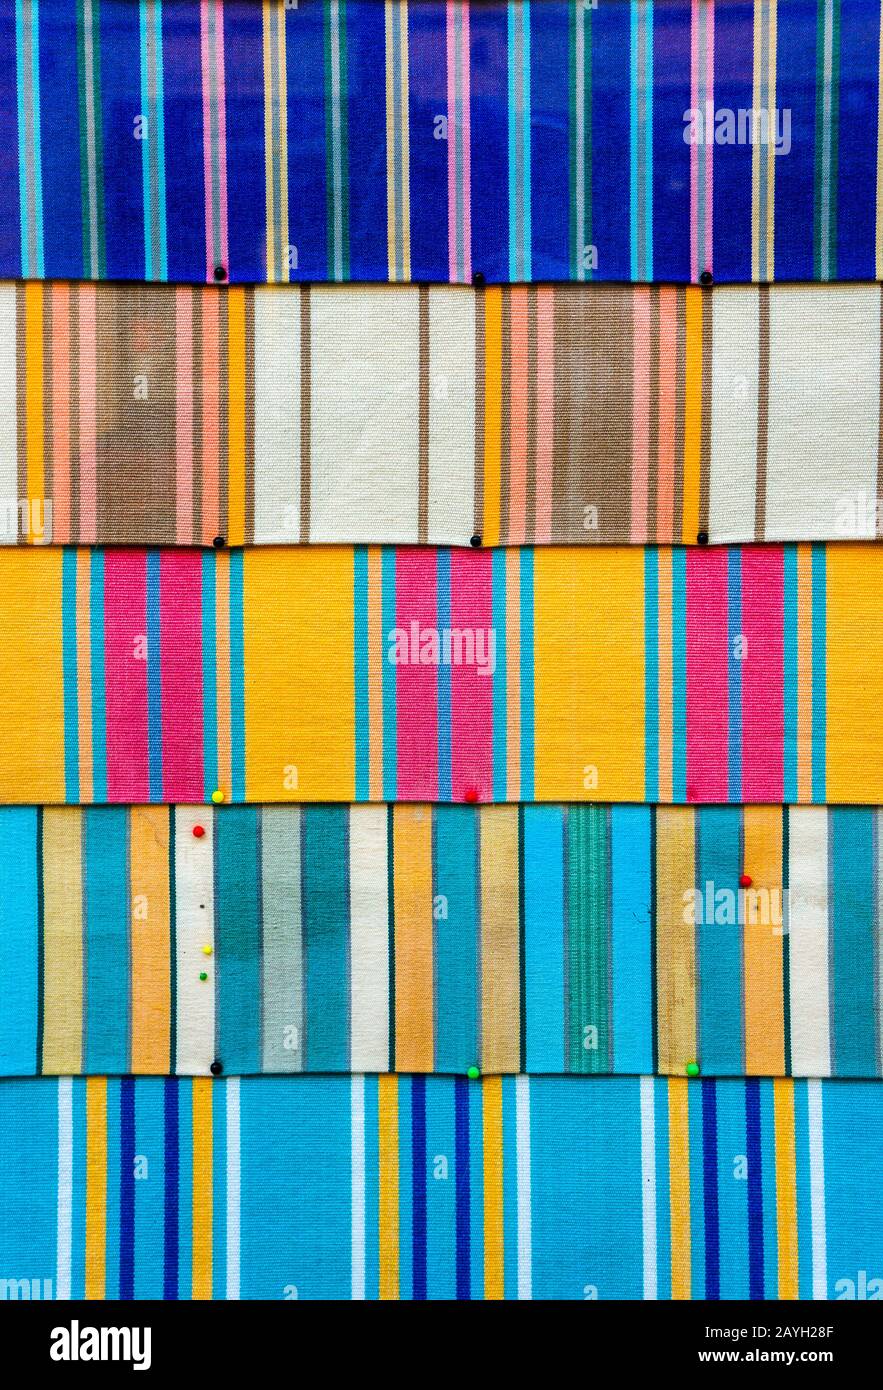 Abstrakte und lebendige Kulisse aus farbenfrohem Material. Stoff mit Pinnwand in hellen Farben und kulturellen und ethnischen Mustern. Stockfoto